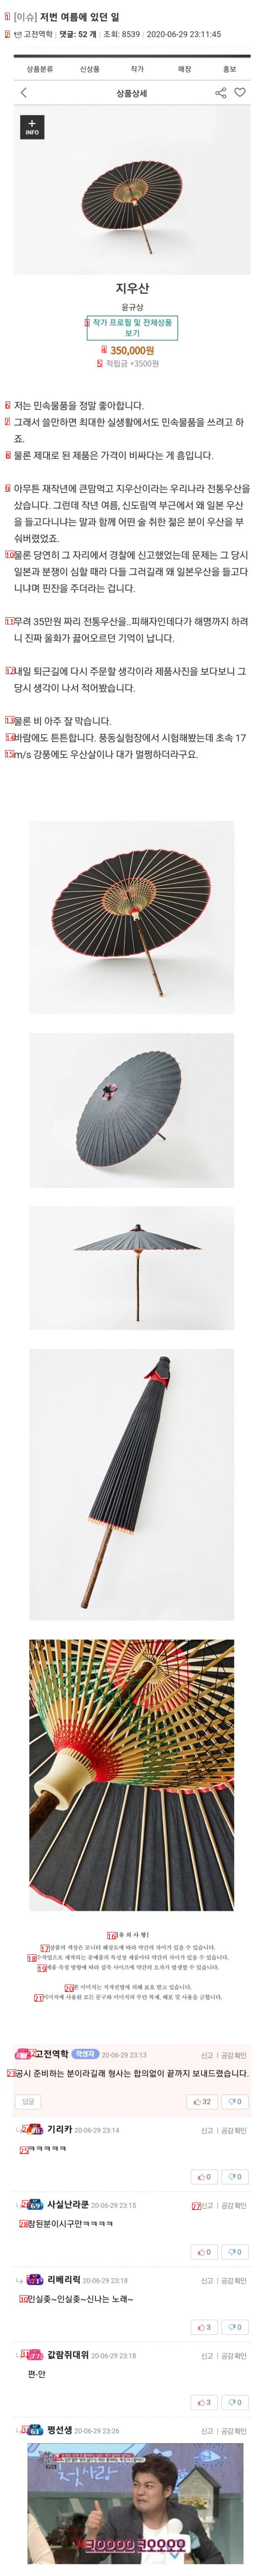 韓国の伝統傘をかぶって歩くと経験すること